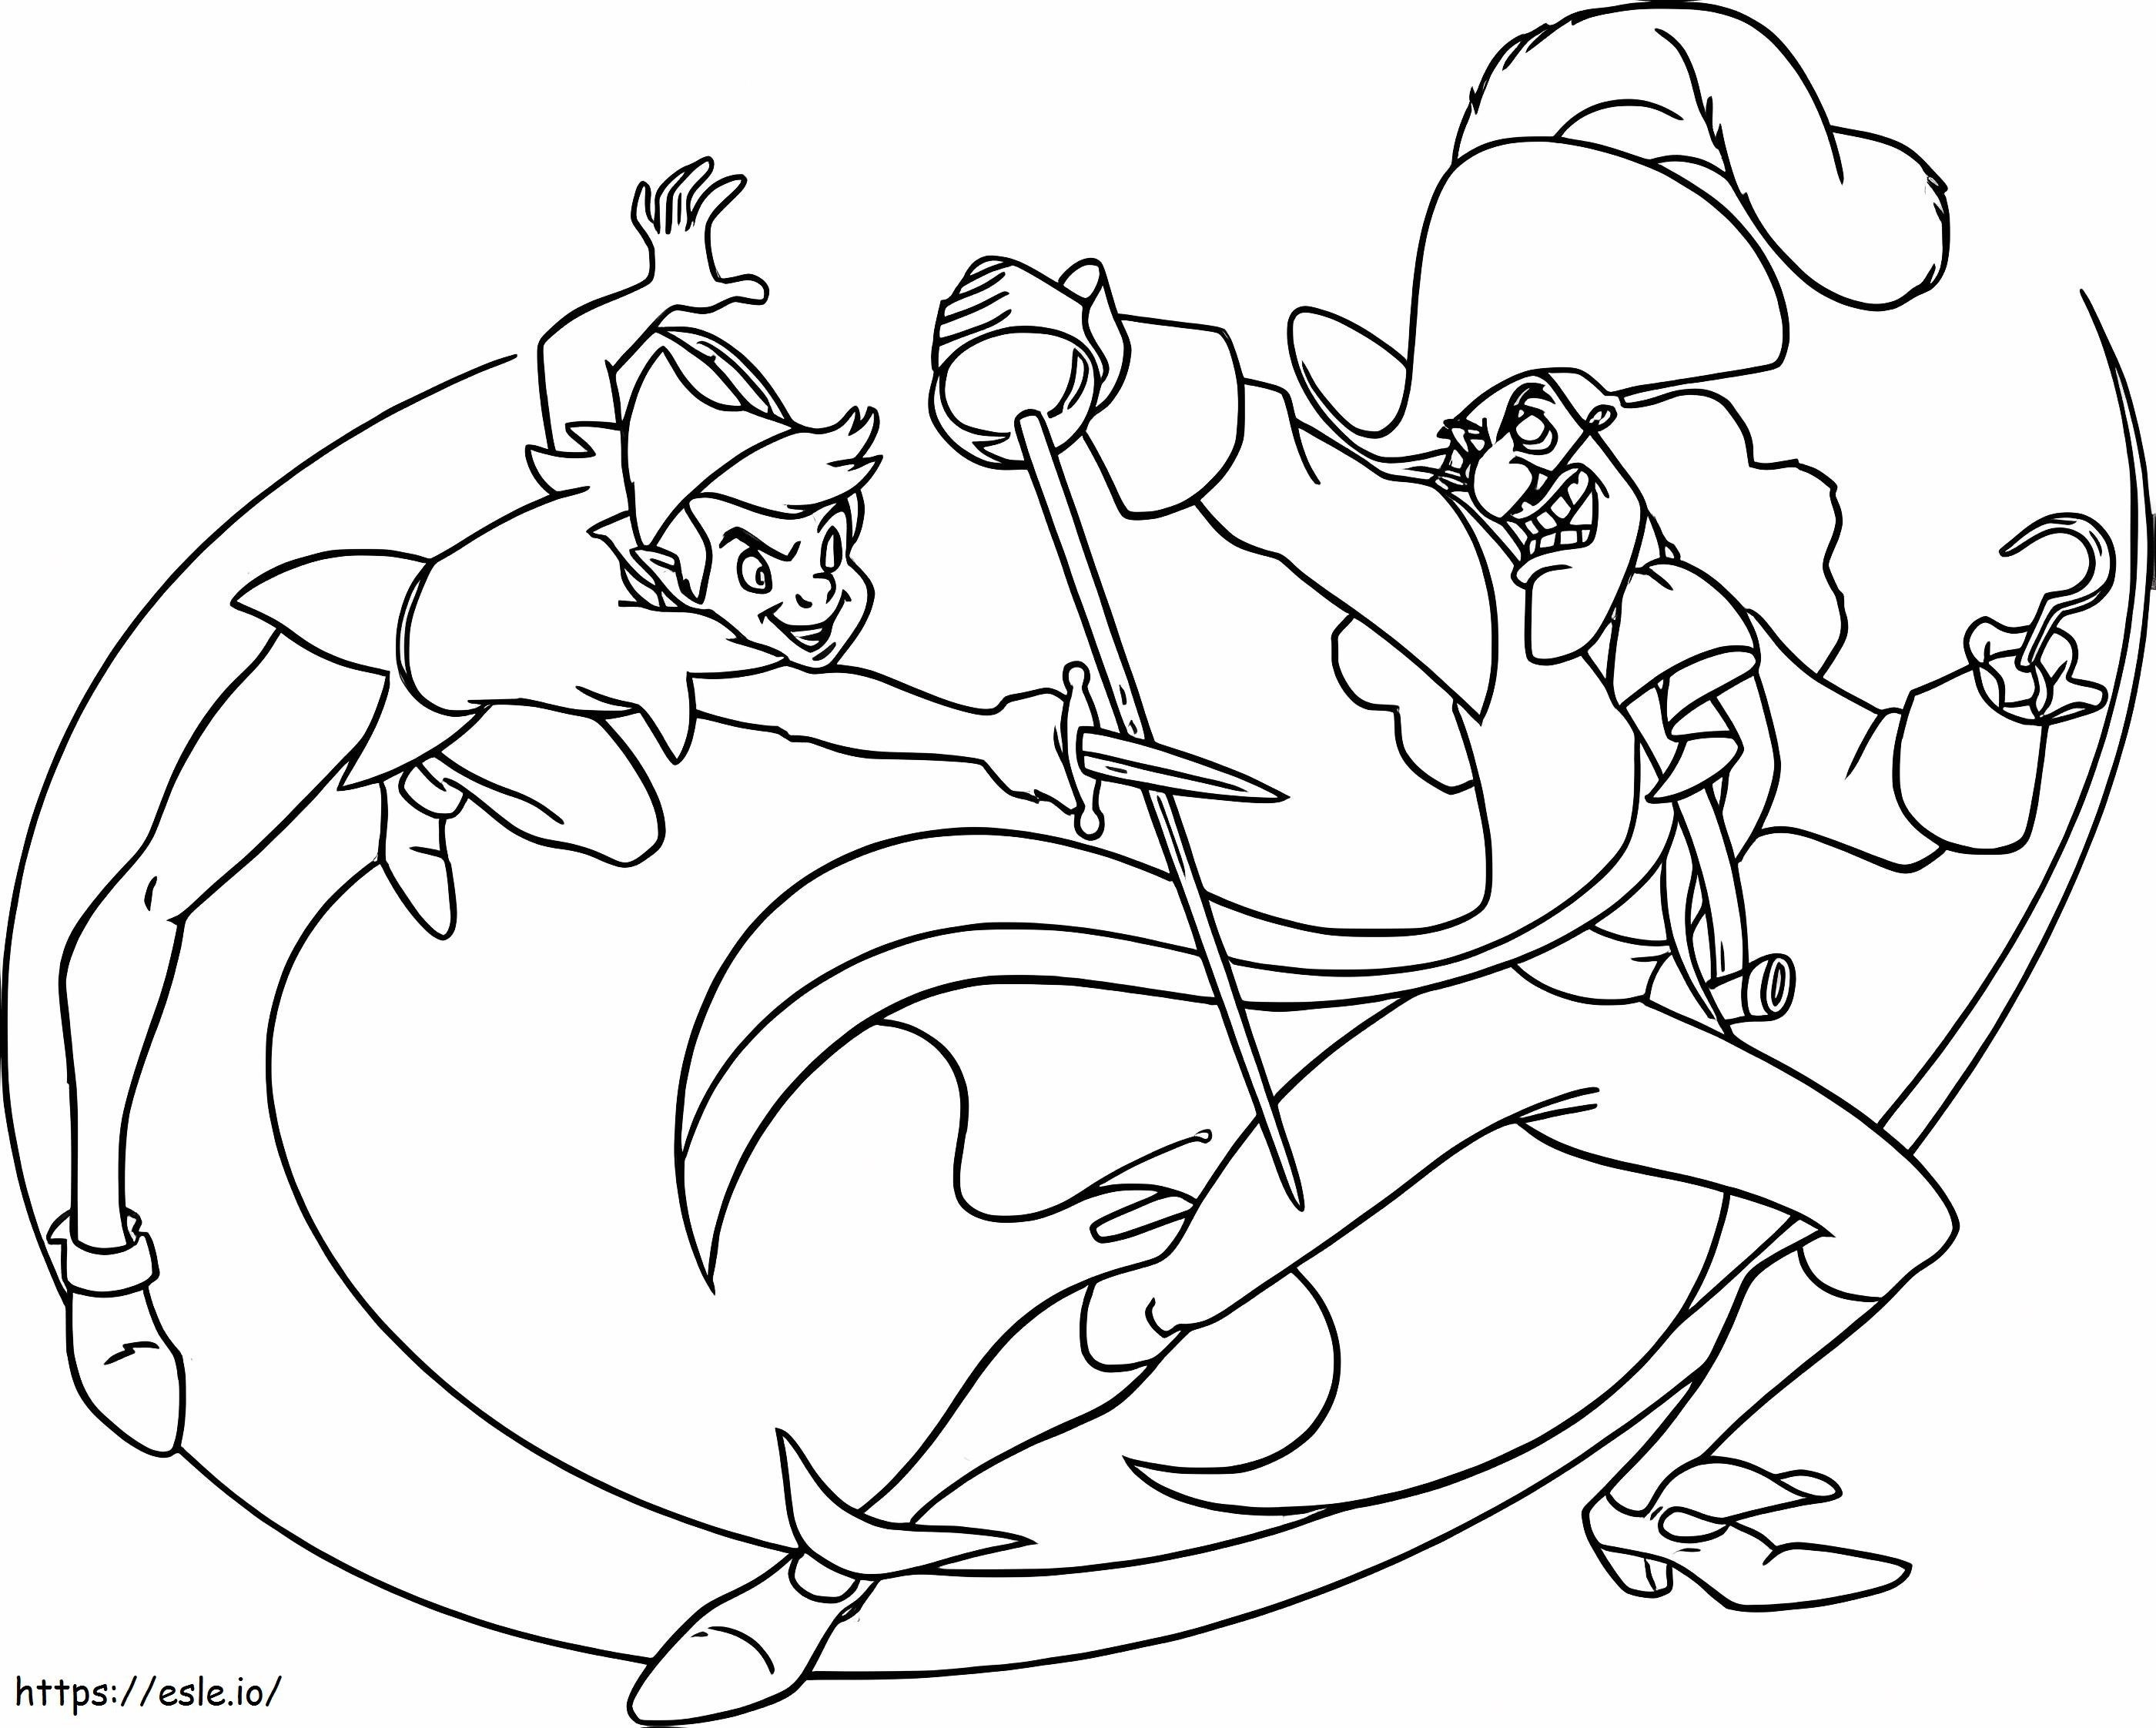 Peter Pan e Capitan Uncino combattono da colorare